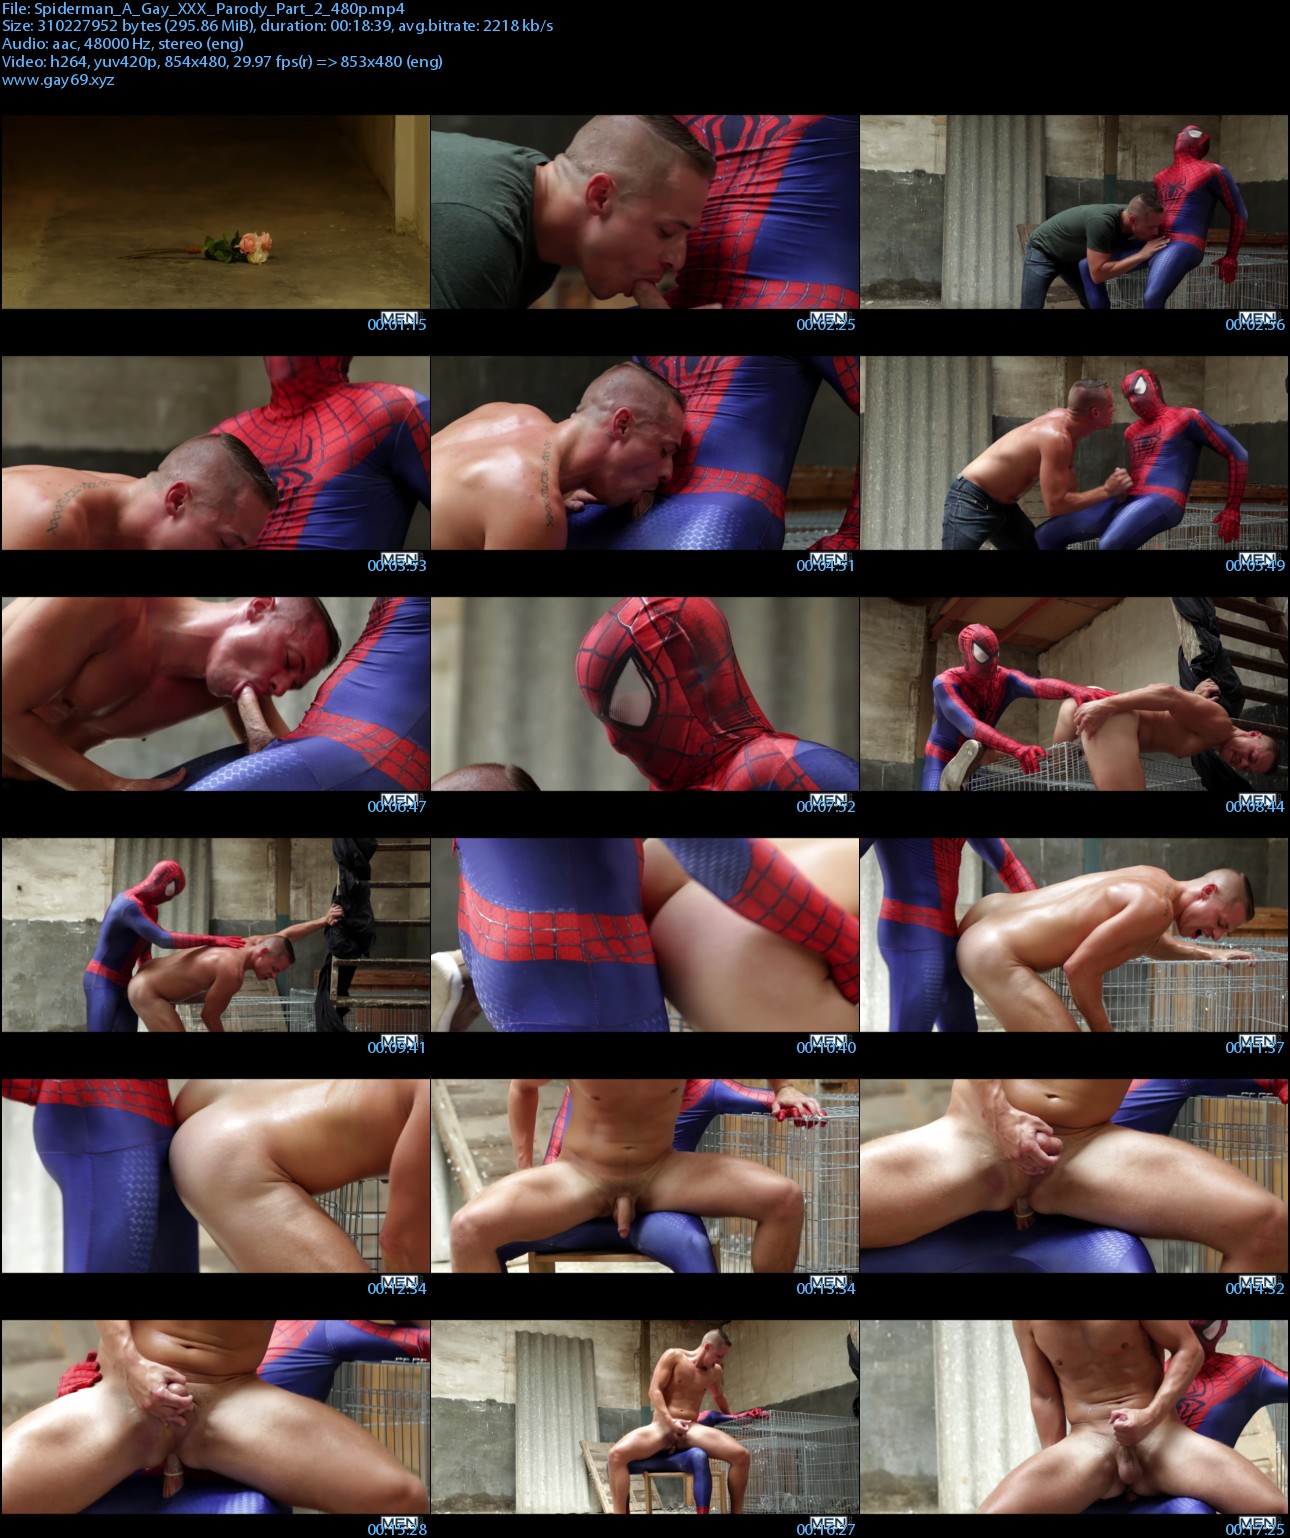 Spiderman_A_Gay_XXX_Parody_Part_2_480p_s.jpg